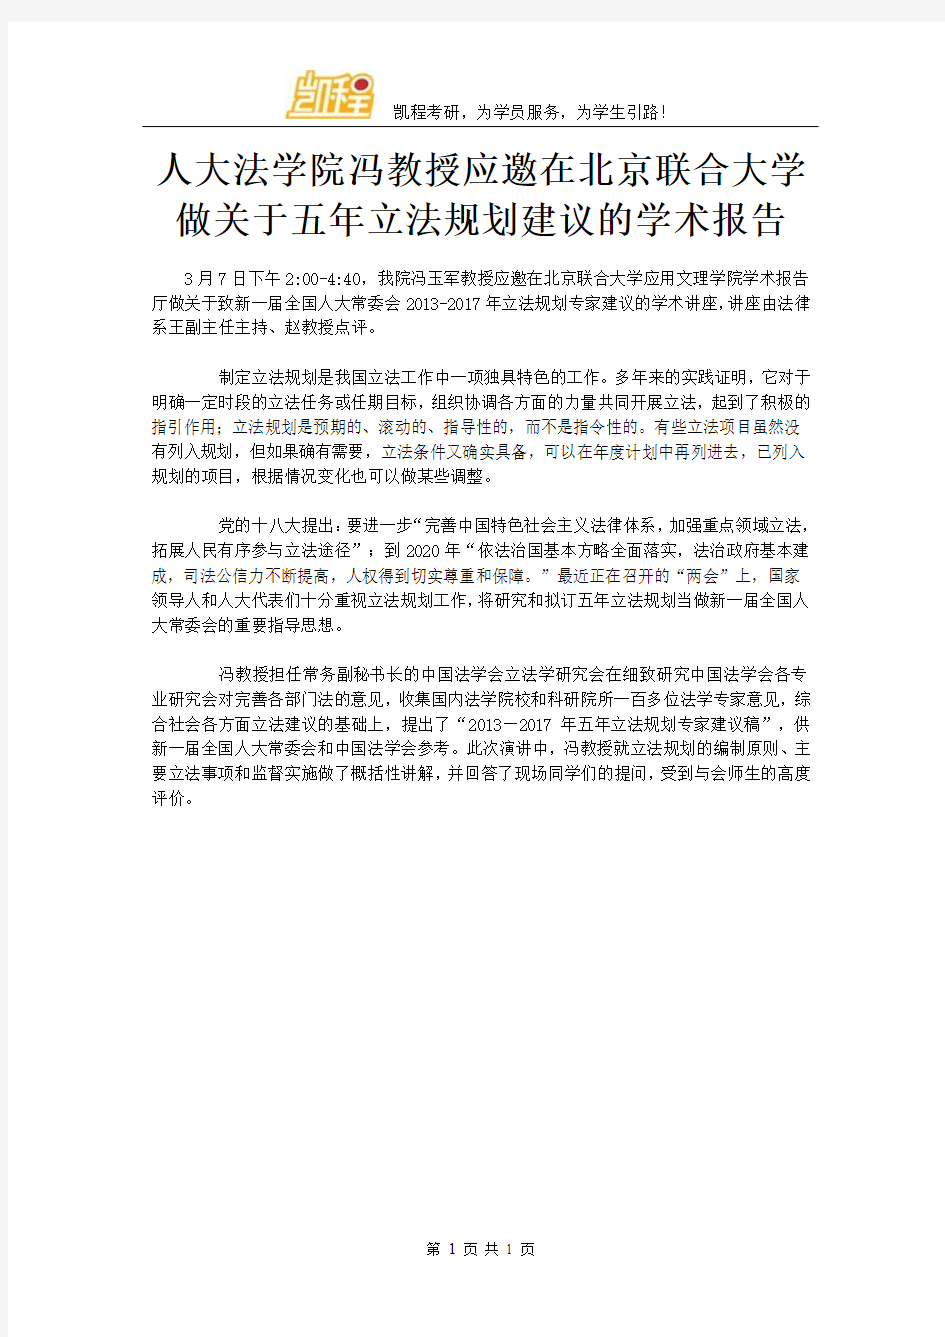 人大法学院冯教授应邀在北京联合大学做关于五年立法规划建议的学术报告